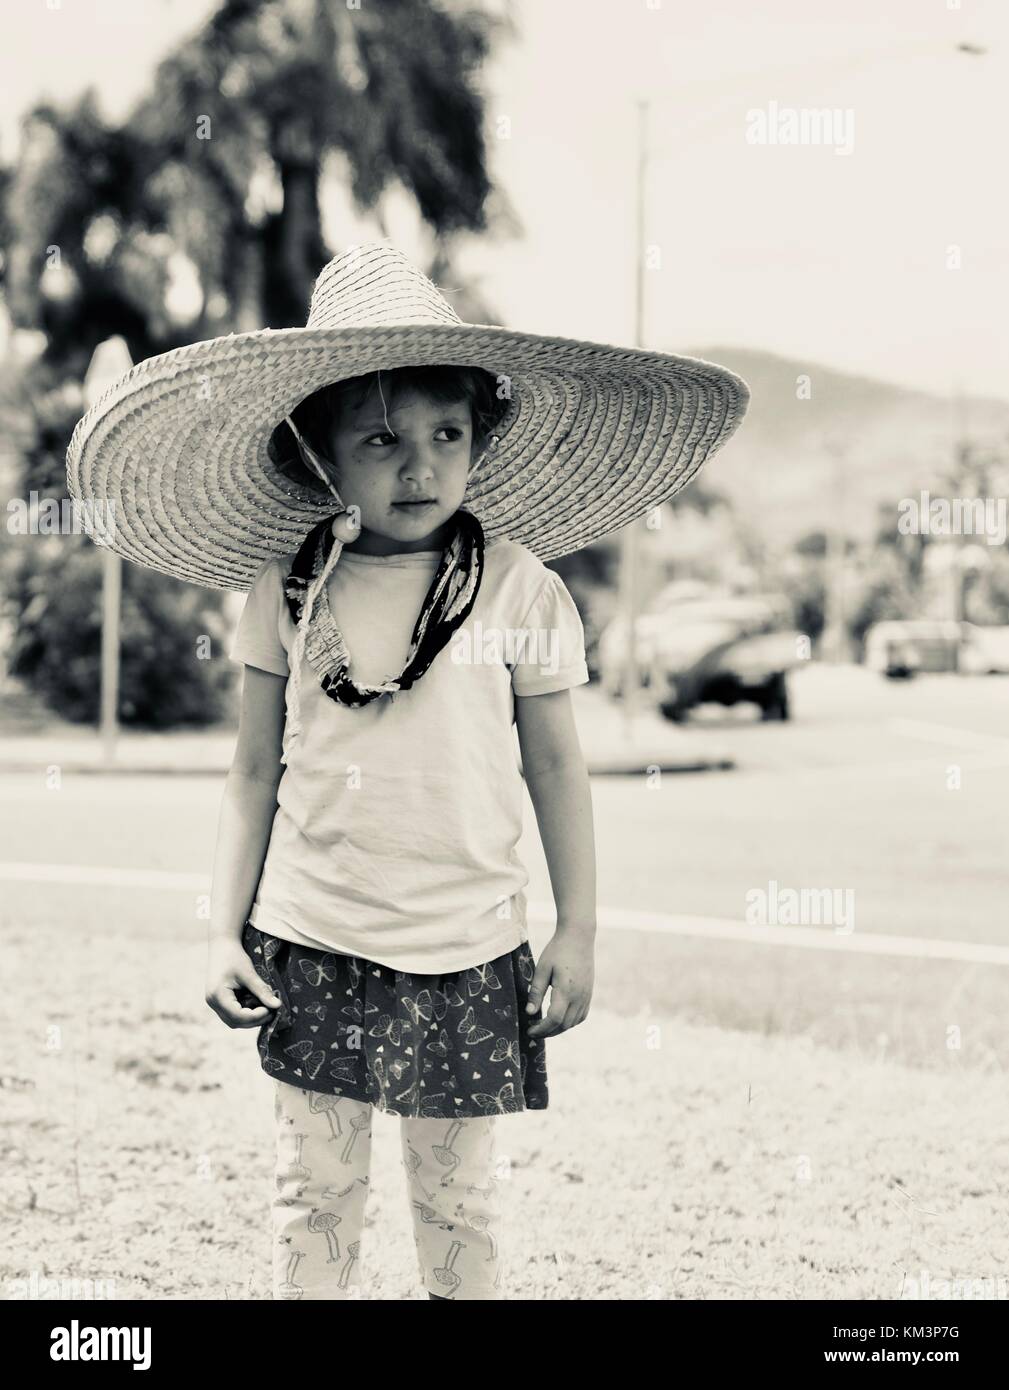 Jeune fille portant un sombrero marche dans une rue de banlieue, Townsville, Queensland, Australie Banque D'Images